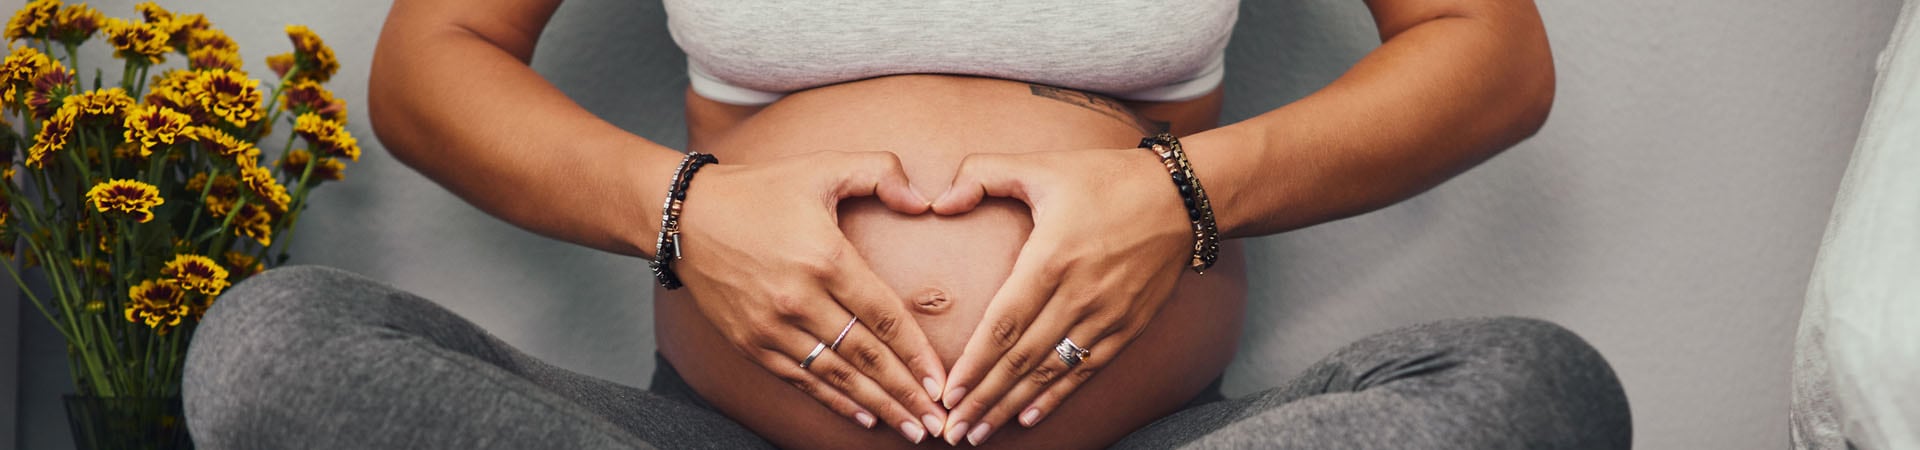 Zwangerschap informatie – Belangrijke tips en schattige DIY-ideeën voor de aanstaande ouders.